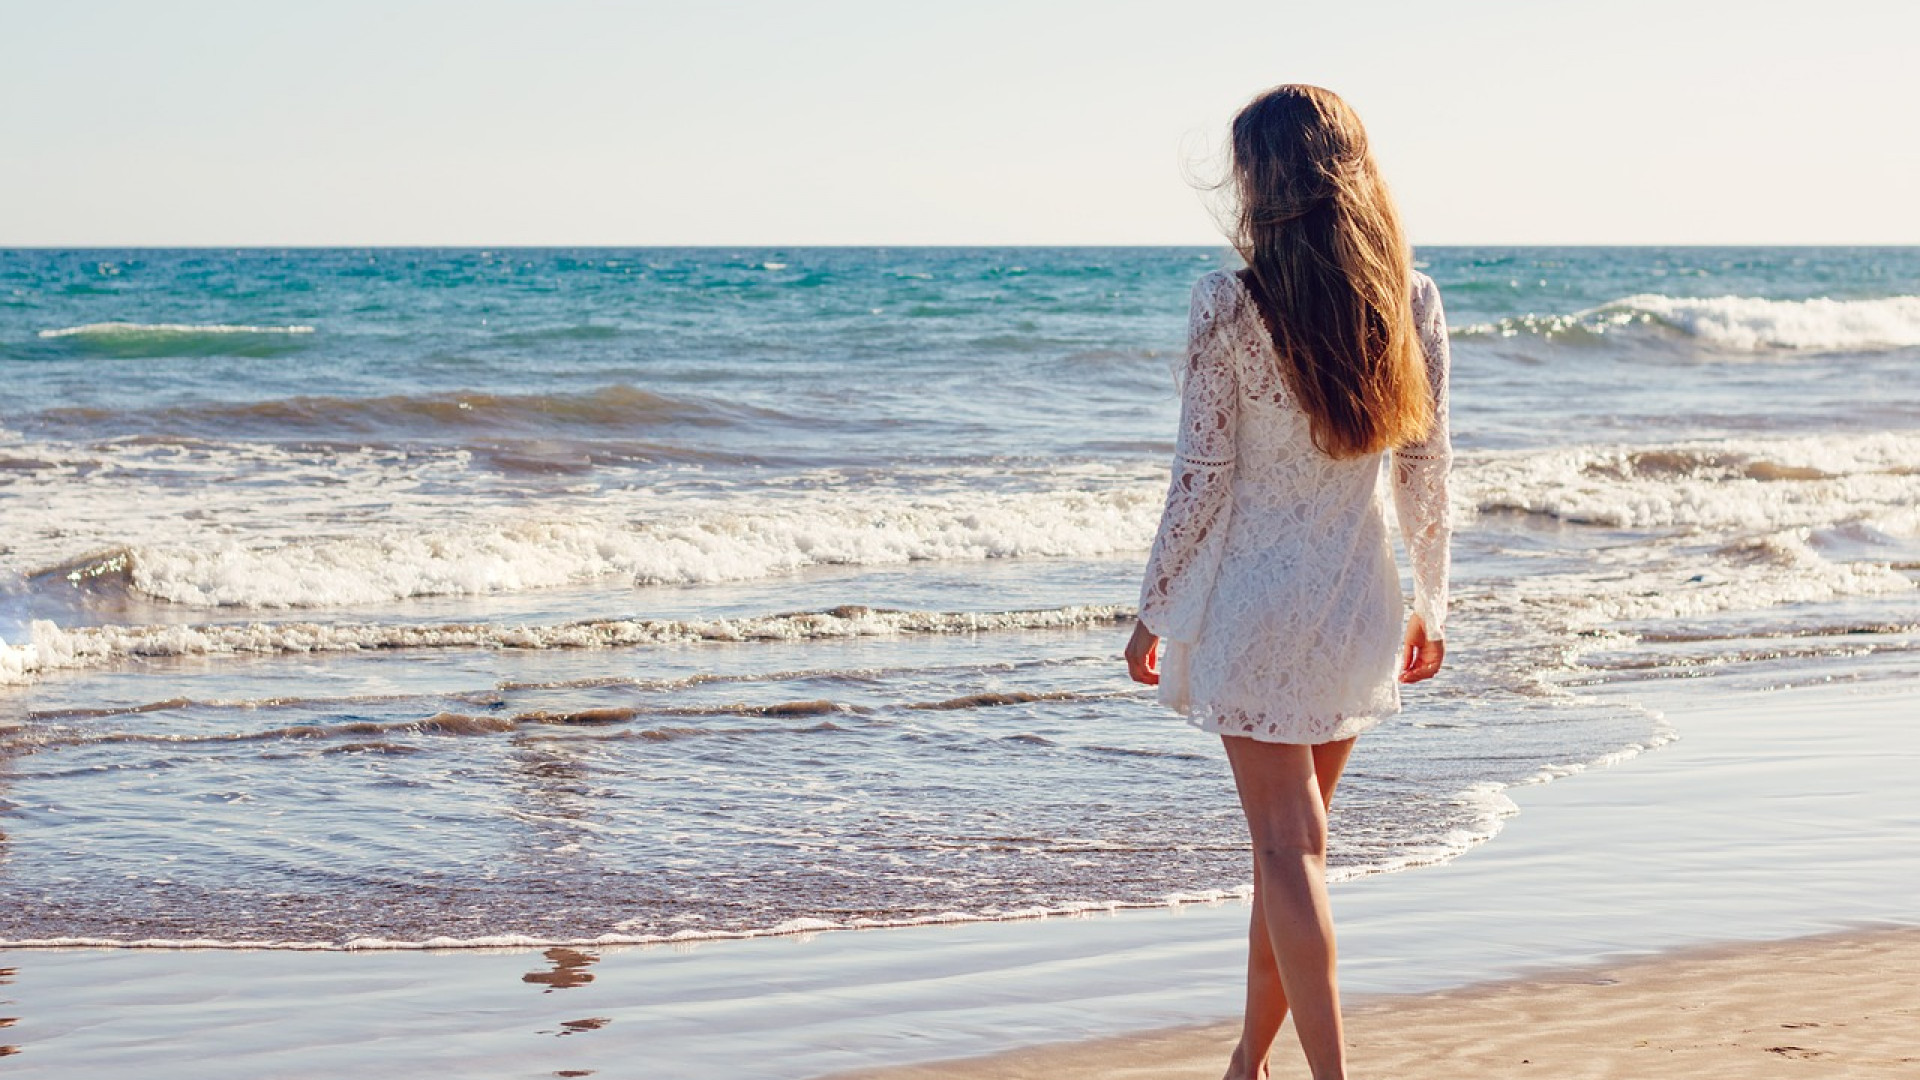 Comment choisir la robe de plage adaptée à votre silhouette ?